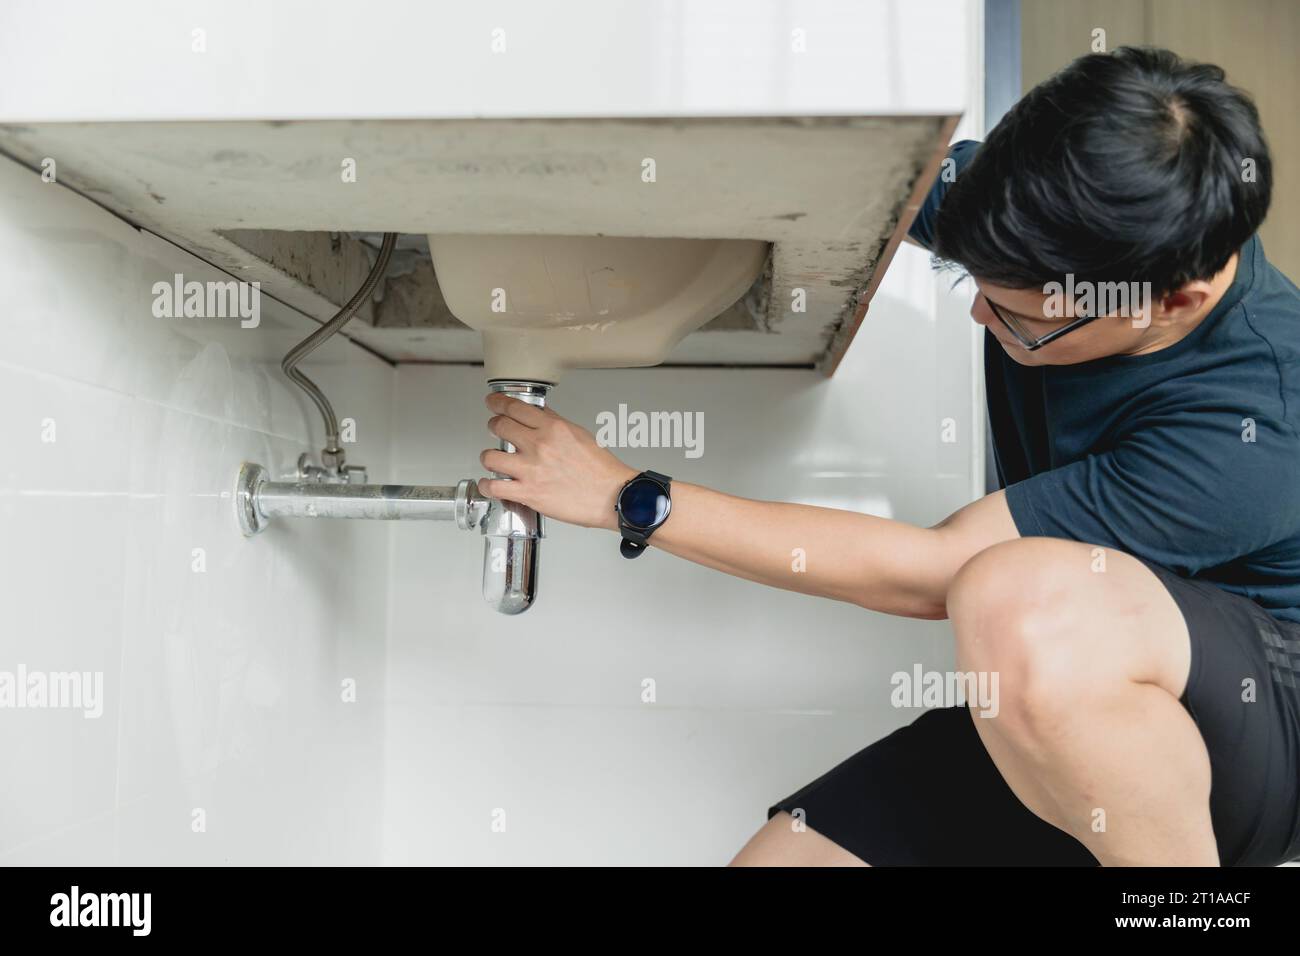 man diy repair sink faucet pipe leak husband working as handyman at home. Stock Photo